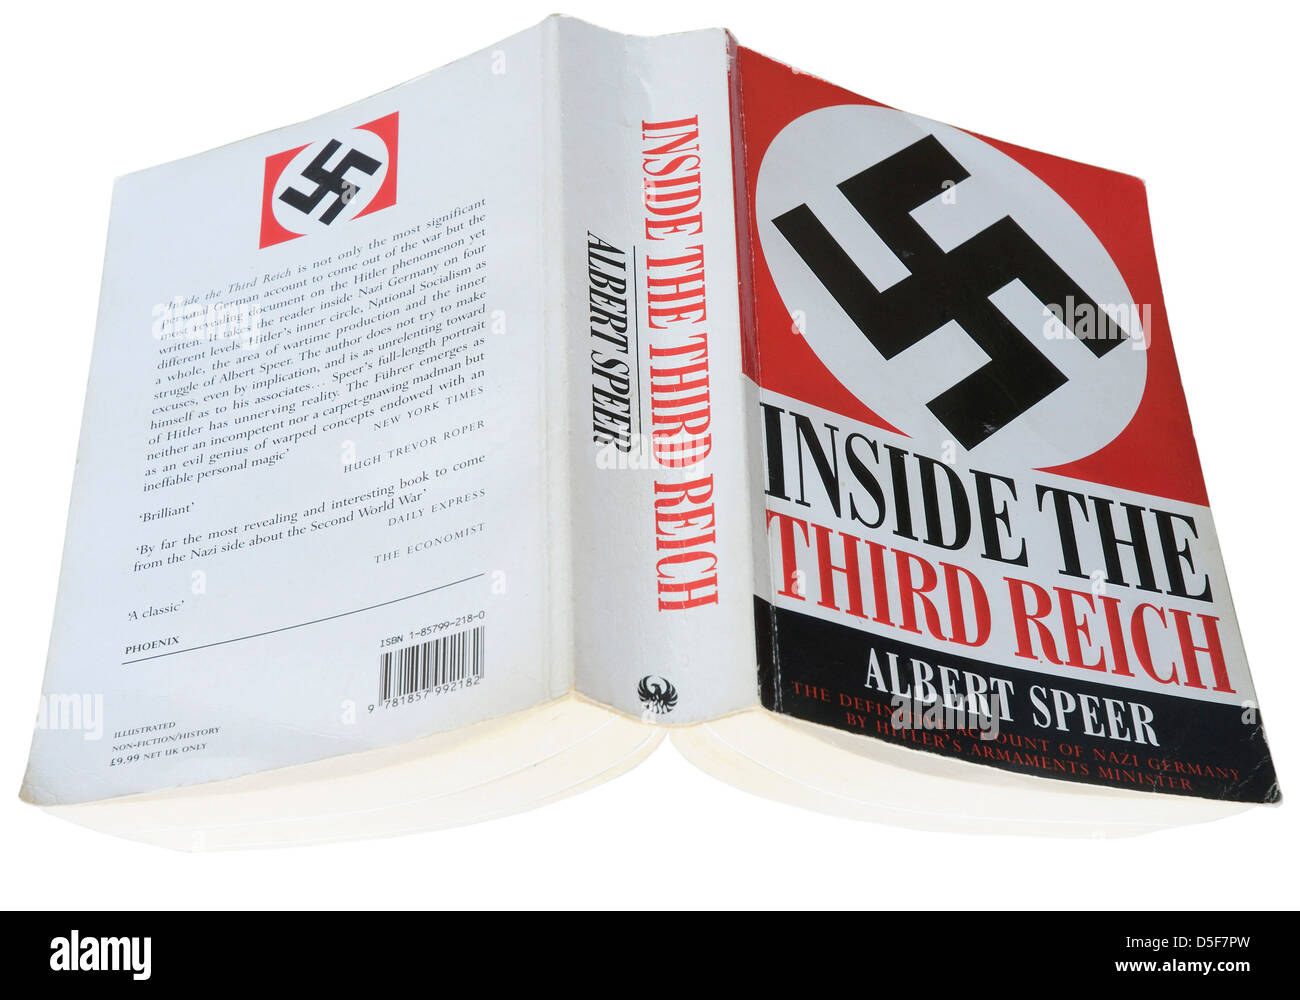 All'interno del terzo Reich da Albert Speer Foto Stock